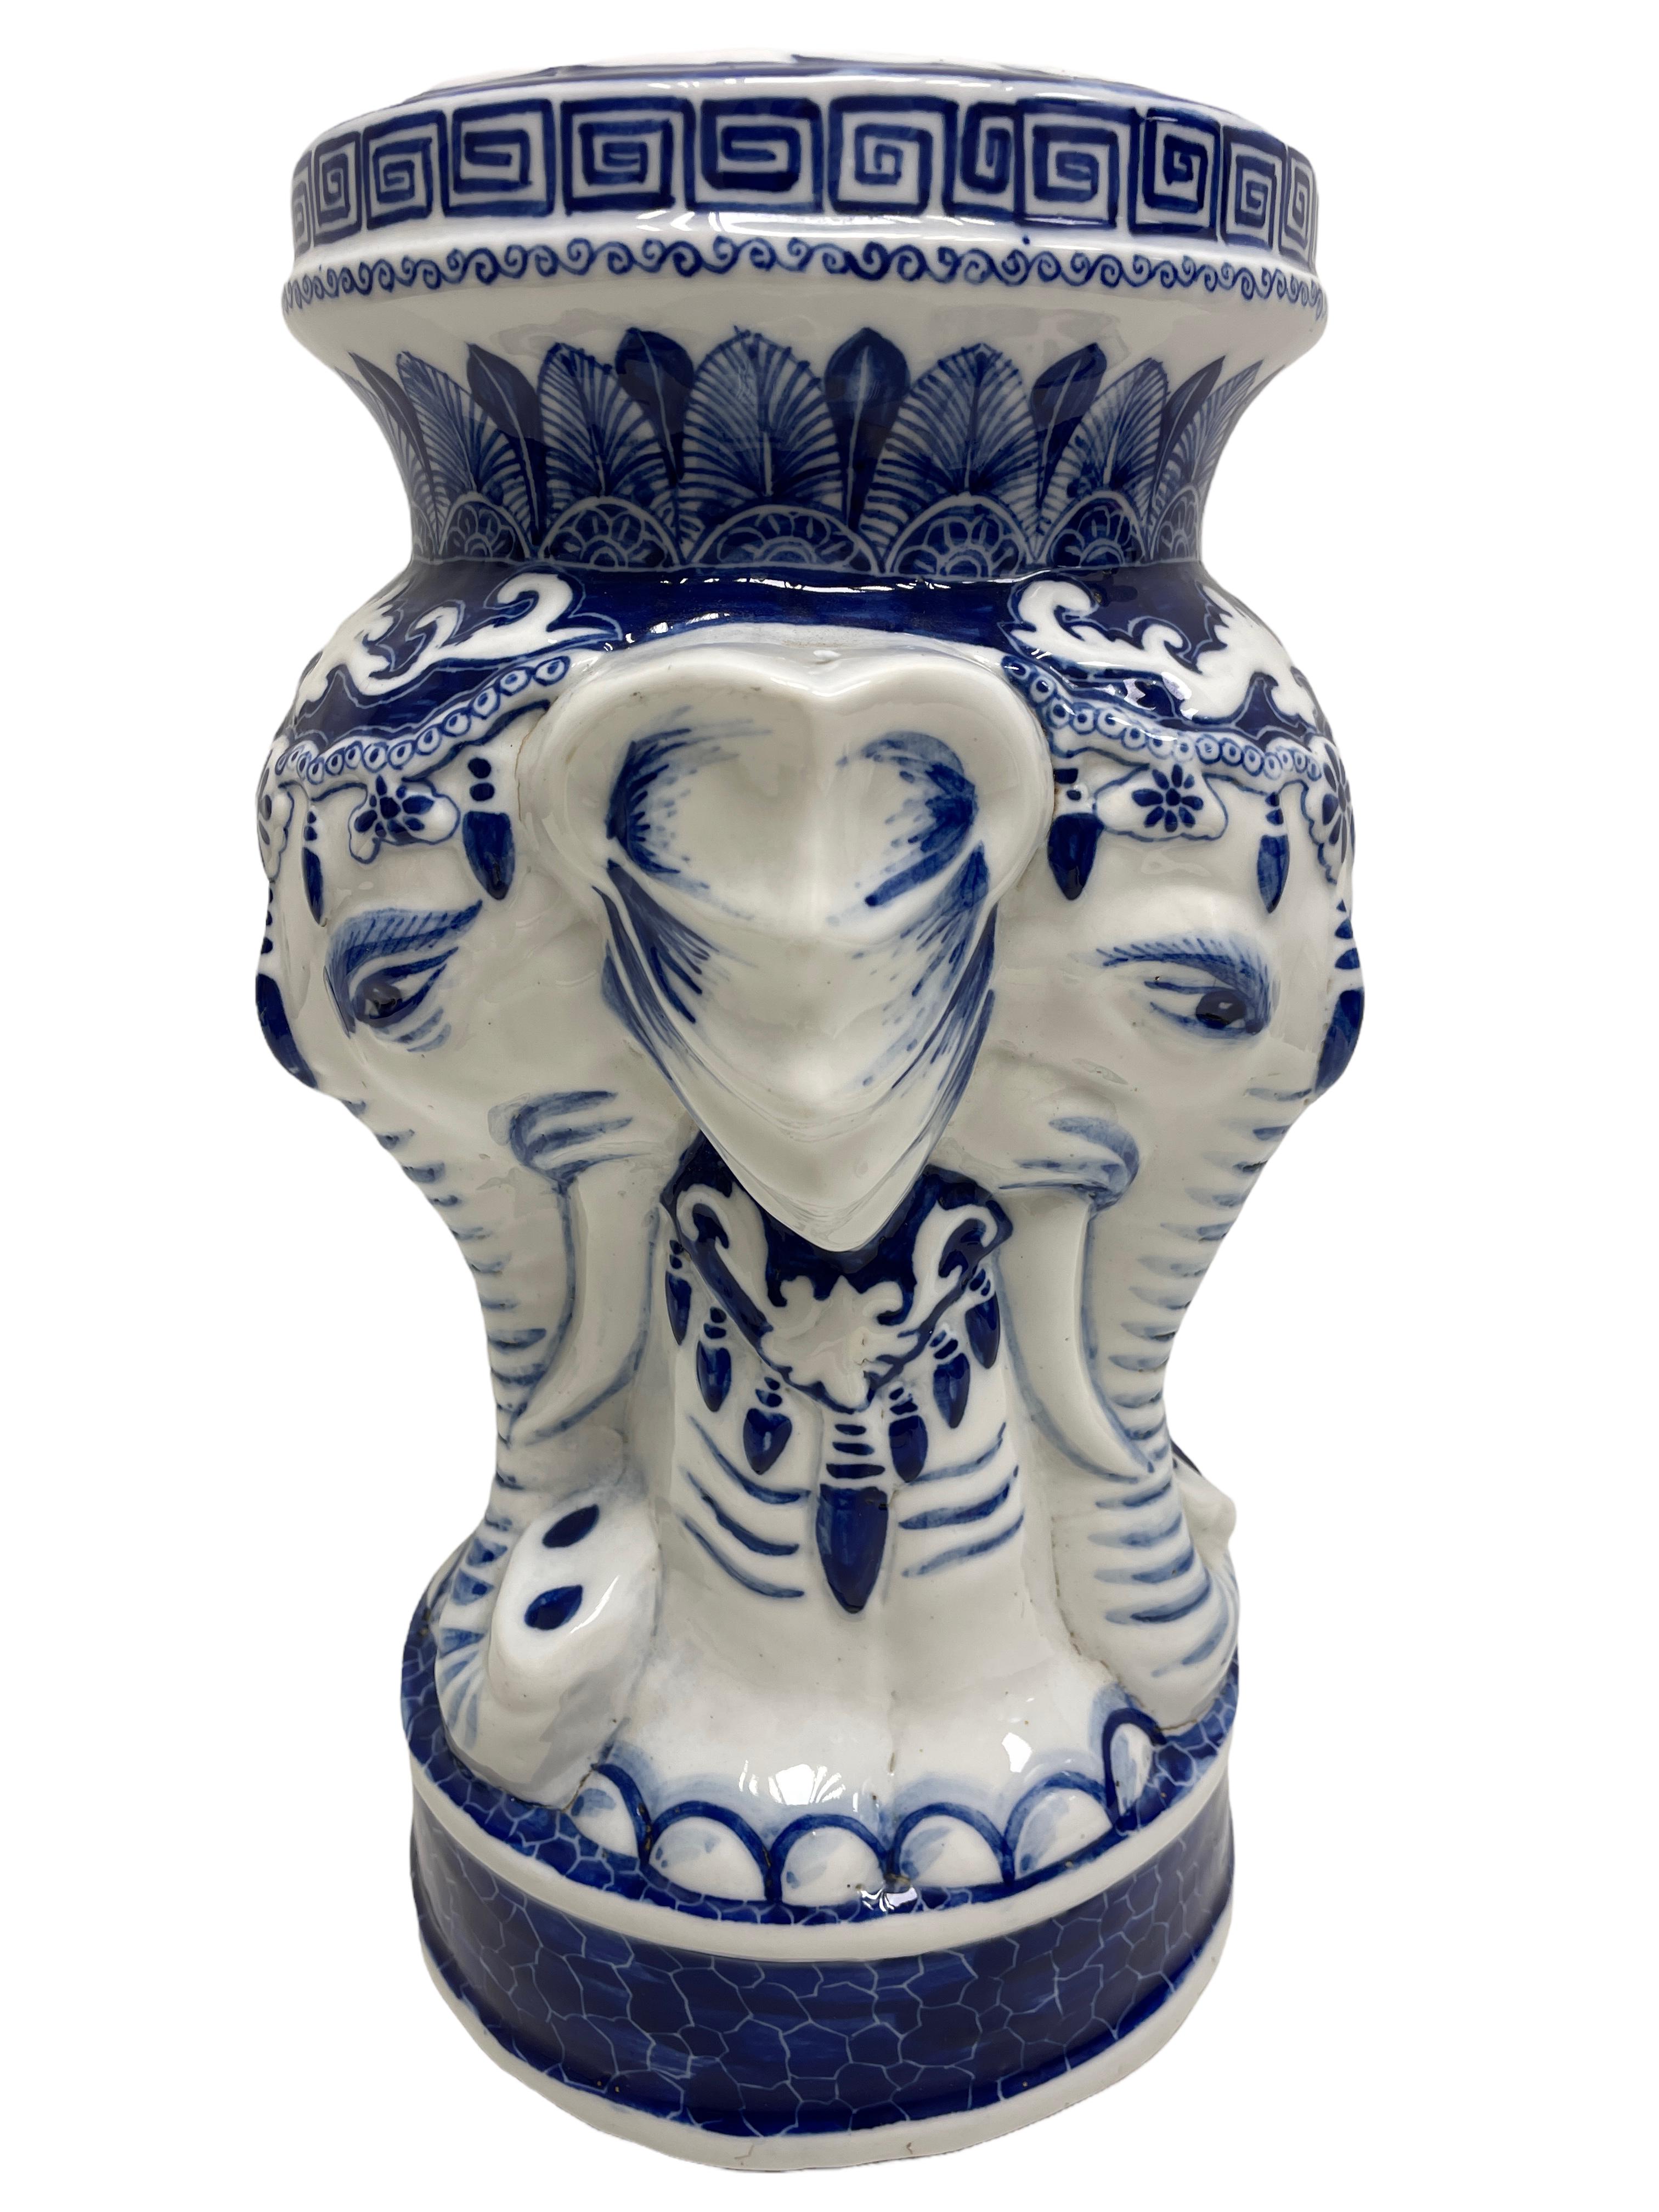 Petite Mitte des 20. Jahrhunderts glasierte Keramik Elefant Blumentopf Pflanzenständer Sitz oder Tisch. Handgefertigt aus Keramik. Eine schöne Ergänzung für Ihr Haus, Ihre Terrasse oder Ihren Garten.
 